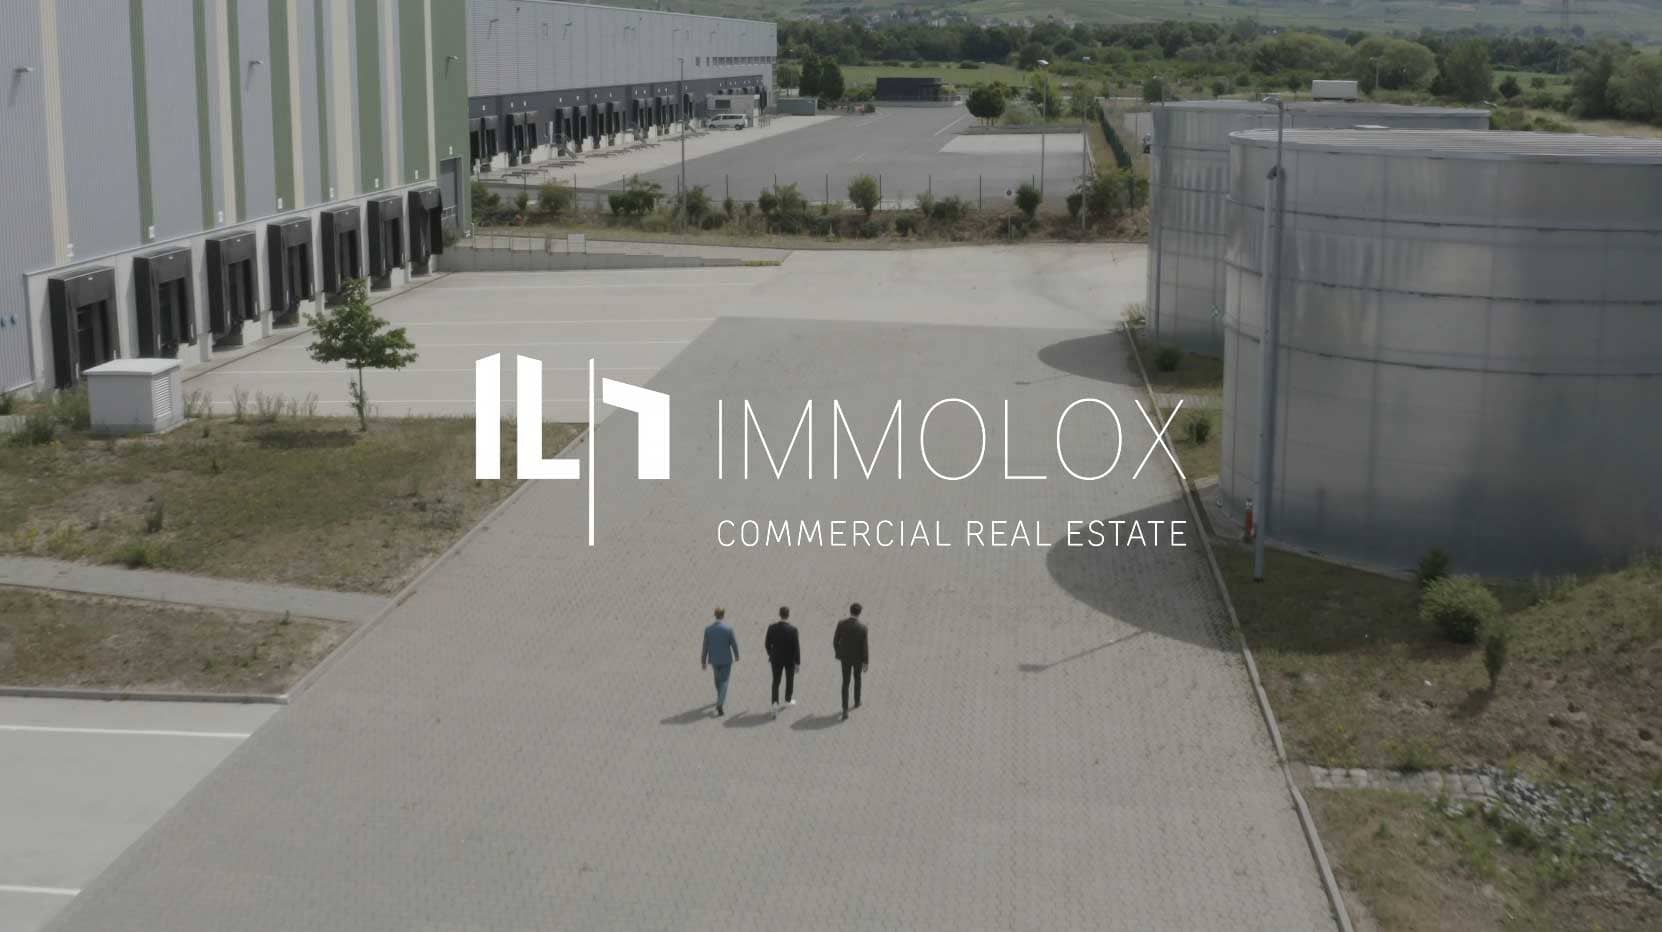 (c) Immolox.de